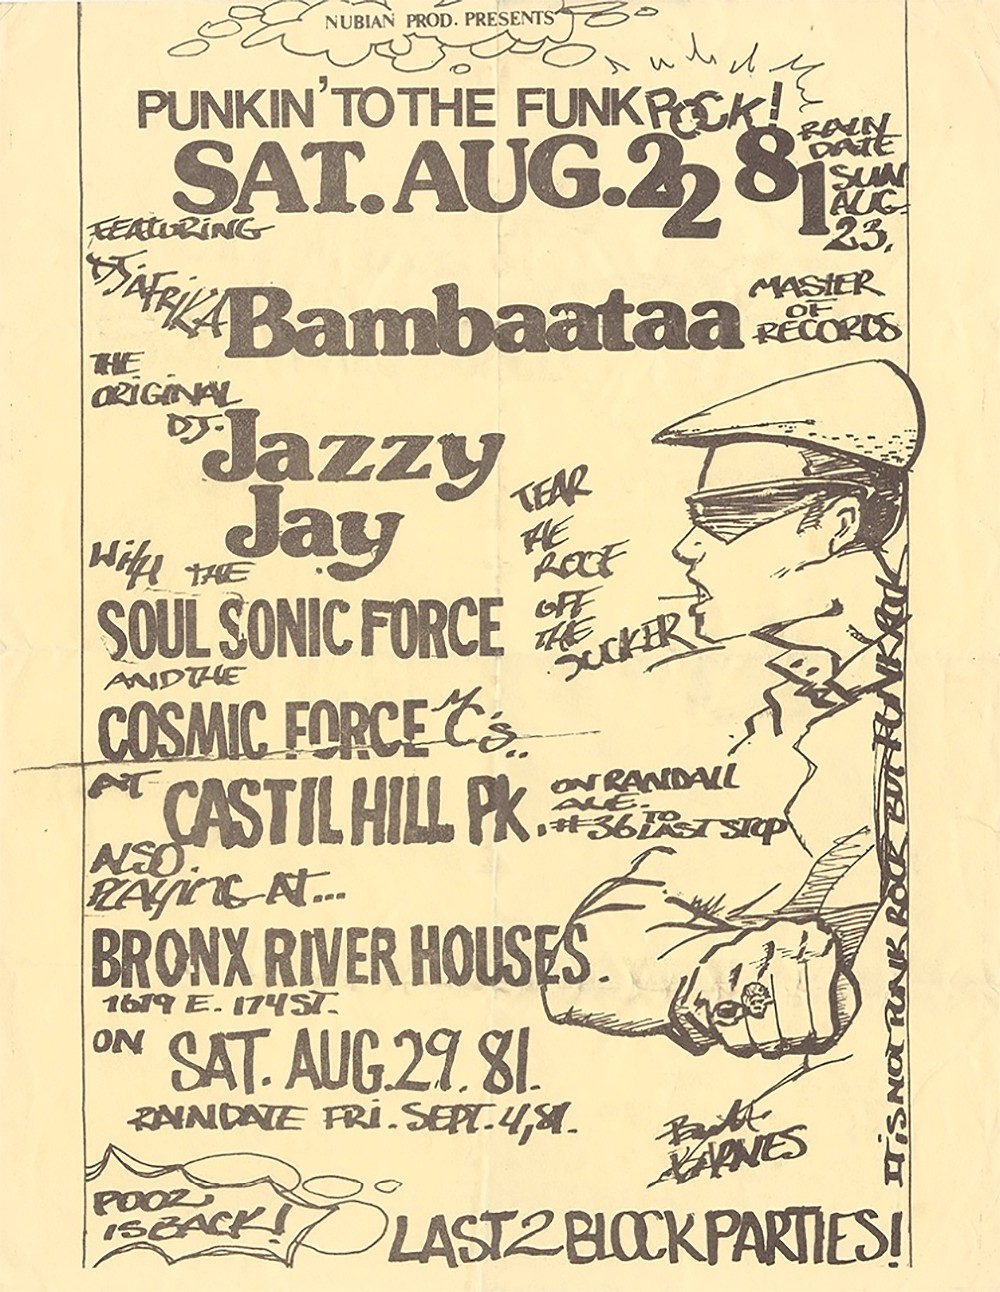 Castil Hill Park, August 22, 1981. 